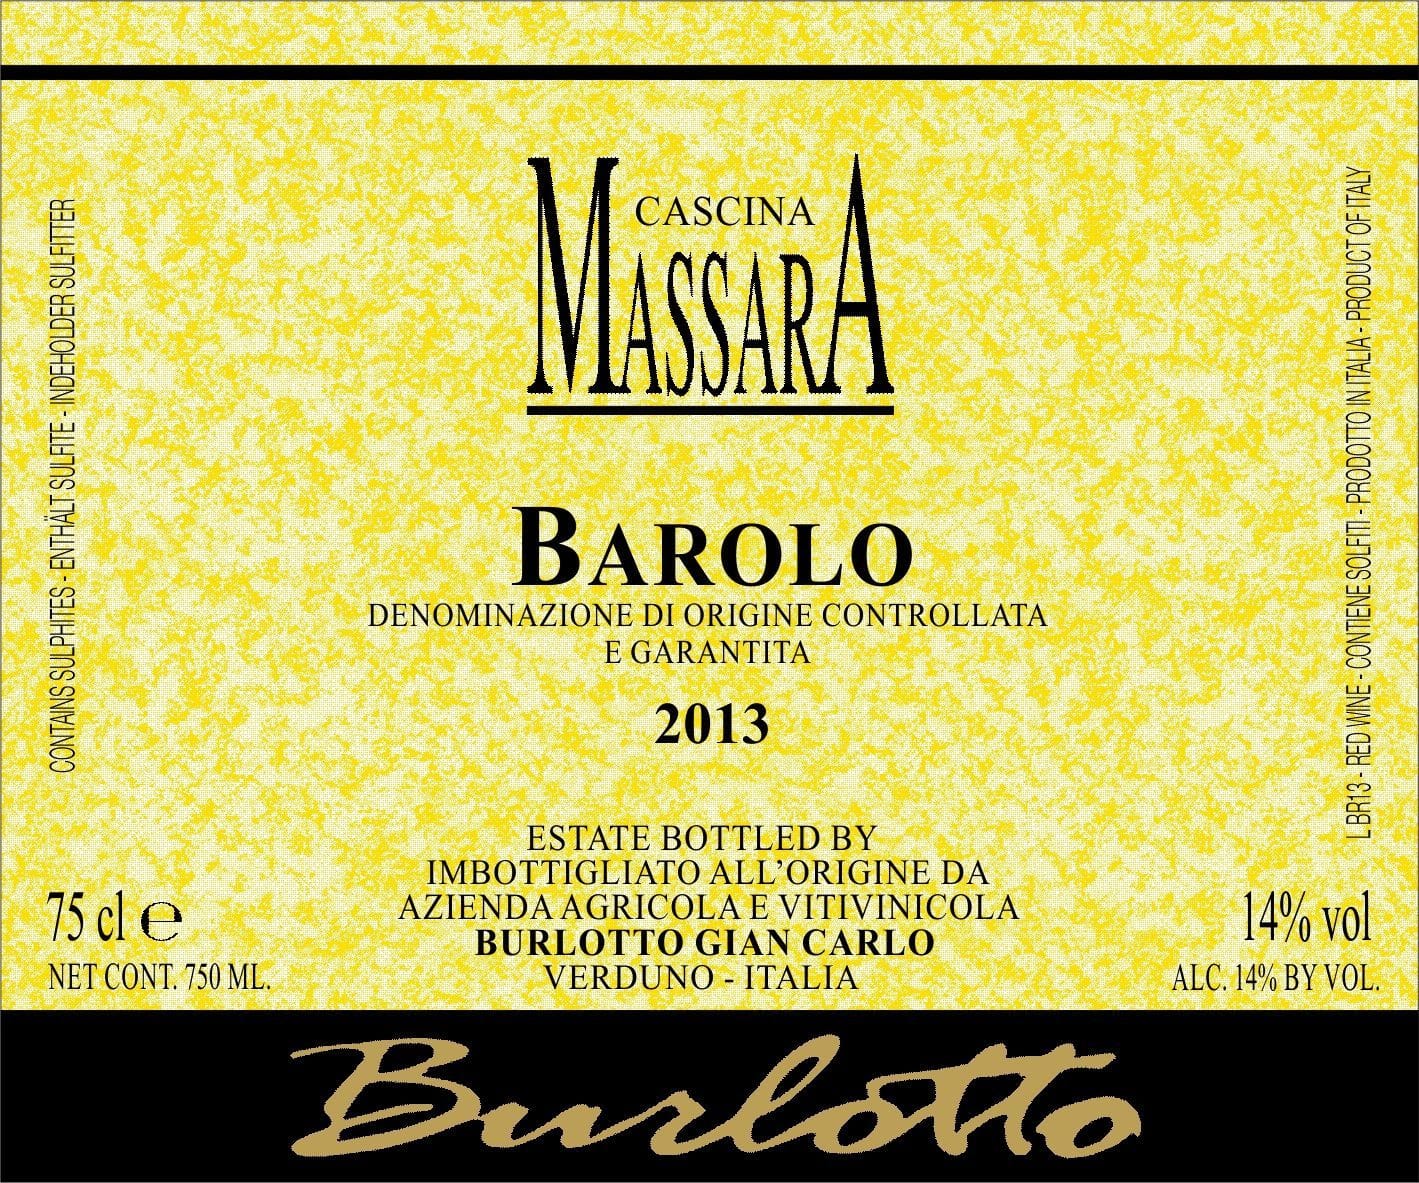 Massara Barolo front label 11e78ce8a3914f5b831f9574ca5aa279